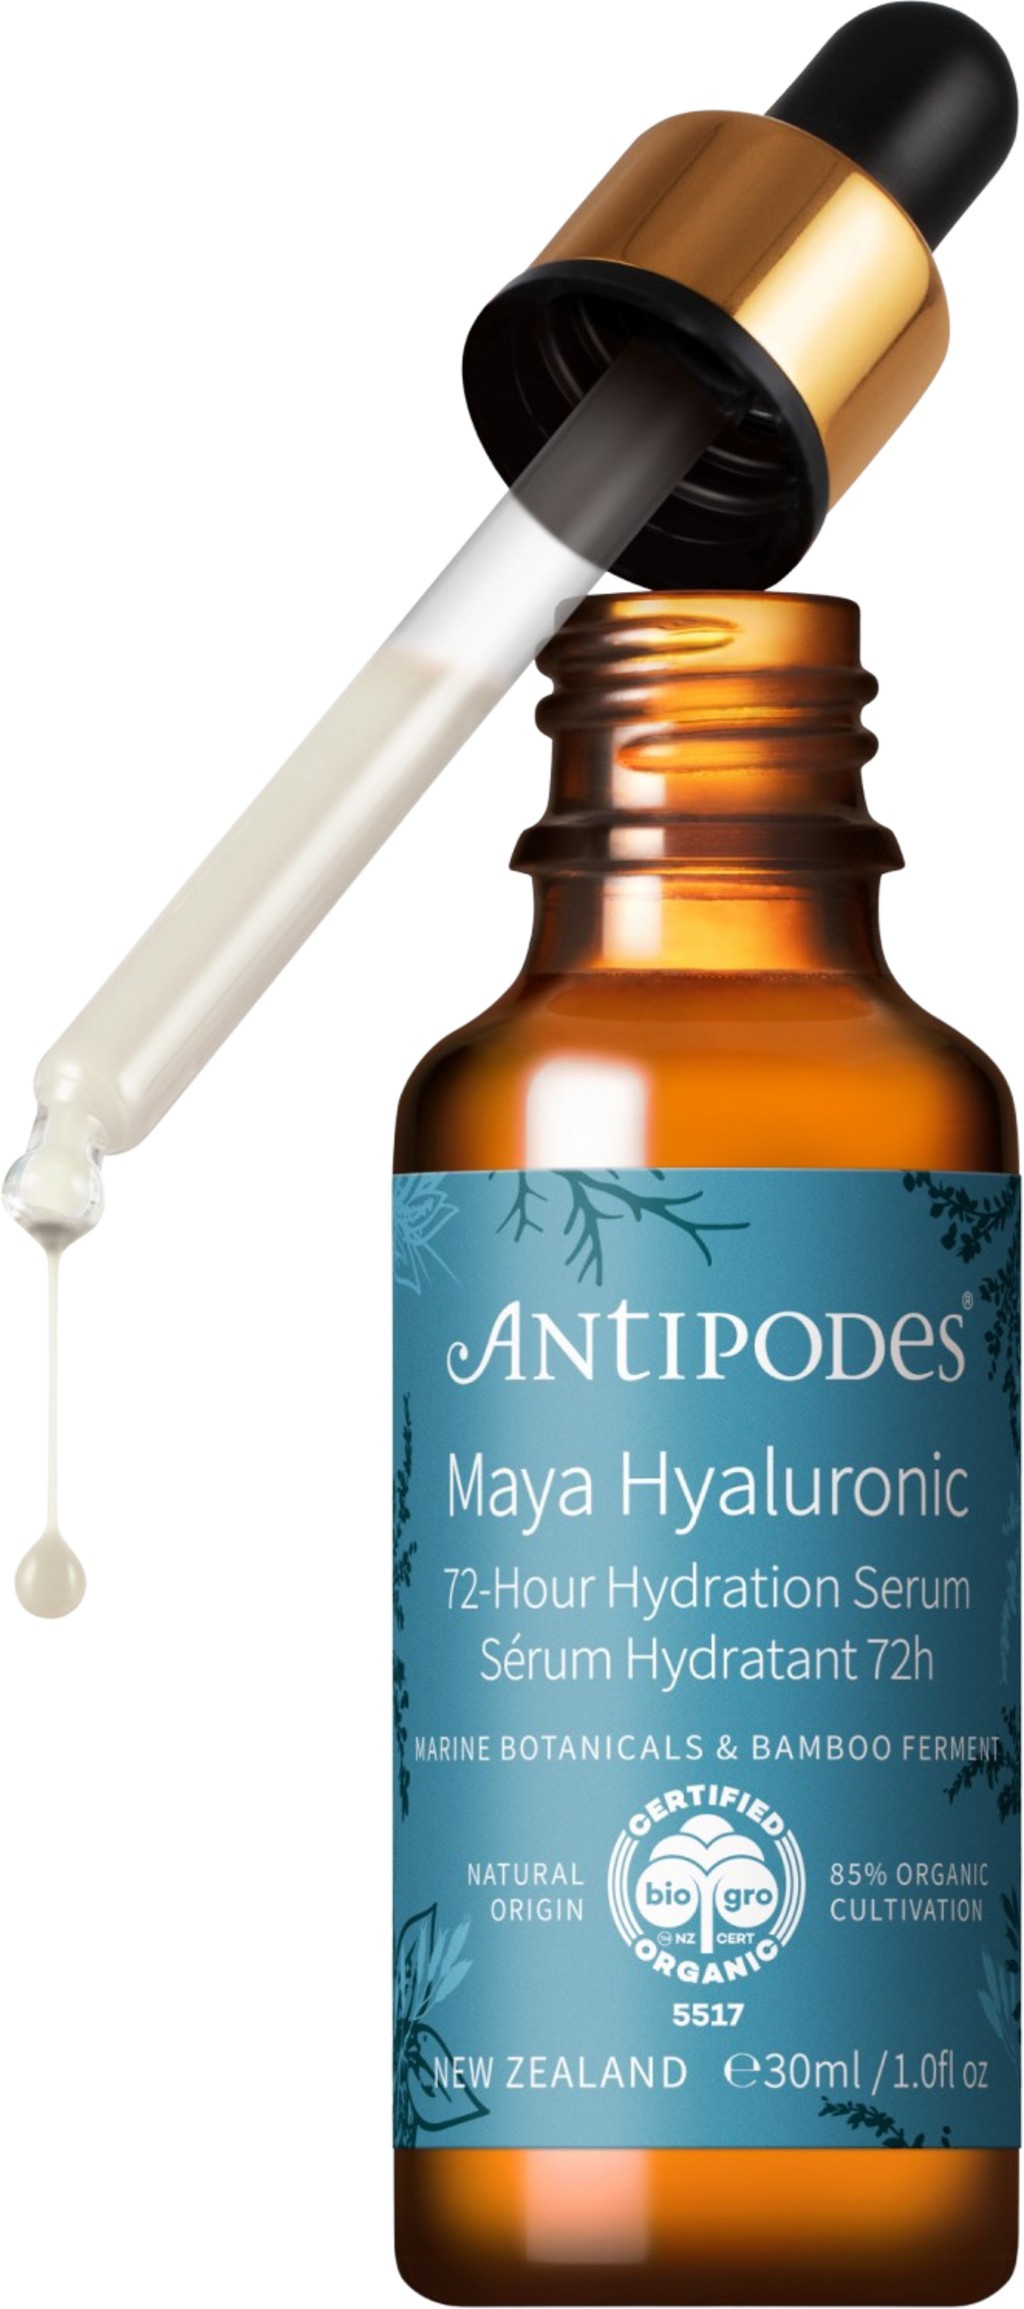 Antipodes Pleťové sérum s kyselinou hyaluronovou Maya Hyaluronic (72-Hour Hydration Serum) 30 ml